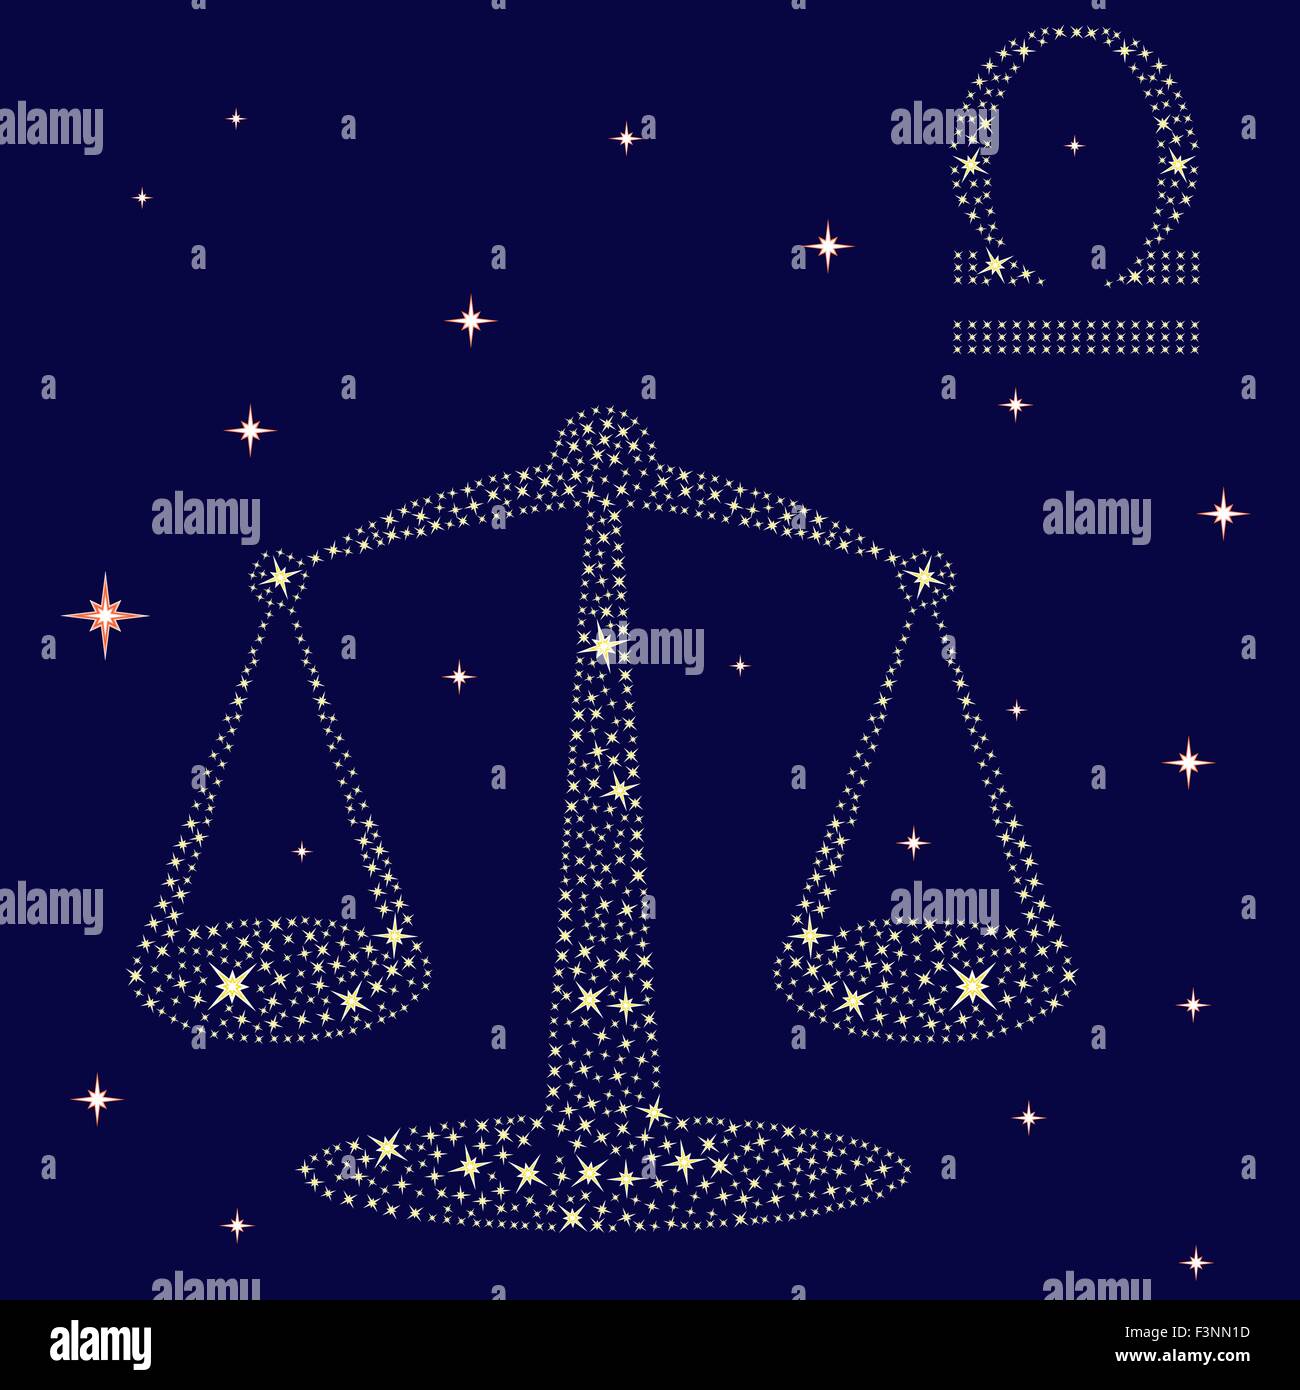 Sternzeichen Waage auf einem Hintergrund des Sternenhimmels,  Vektor-illustration Stock-Vektorgrafik - Alamy